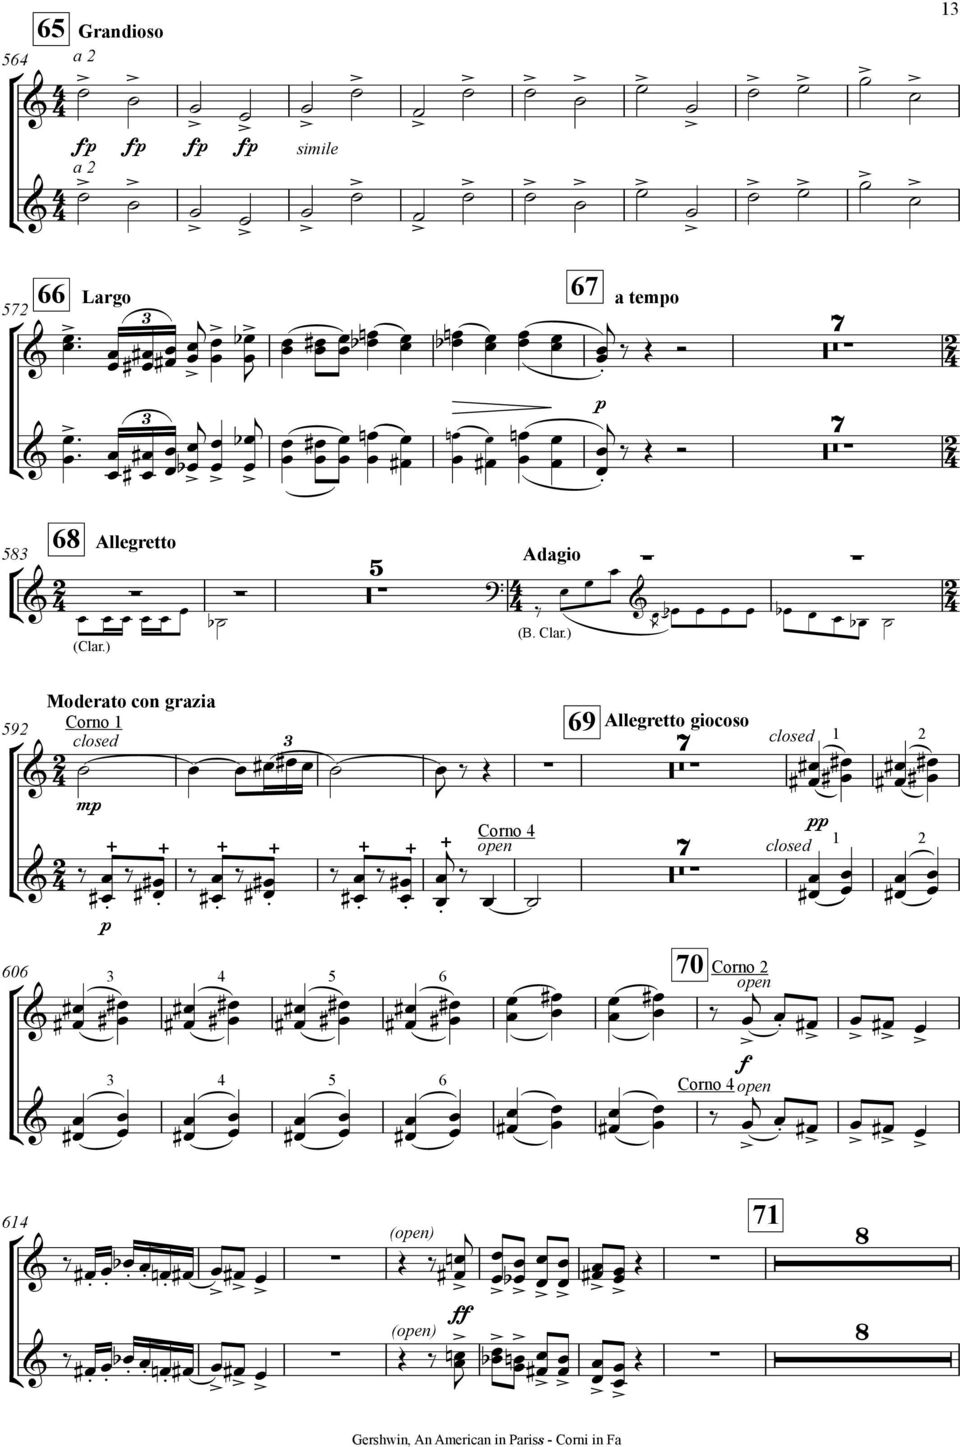 Adagio (B Clar) Ц 59 Moderato co grazia Coro 1 closed 9 Allegretto